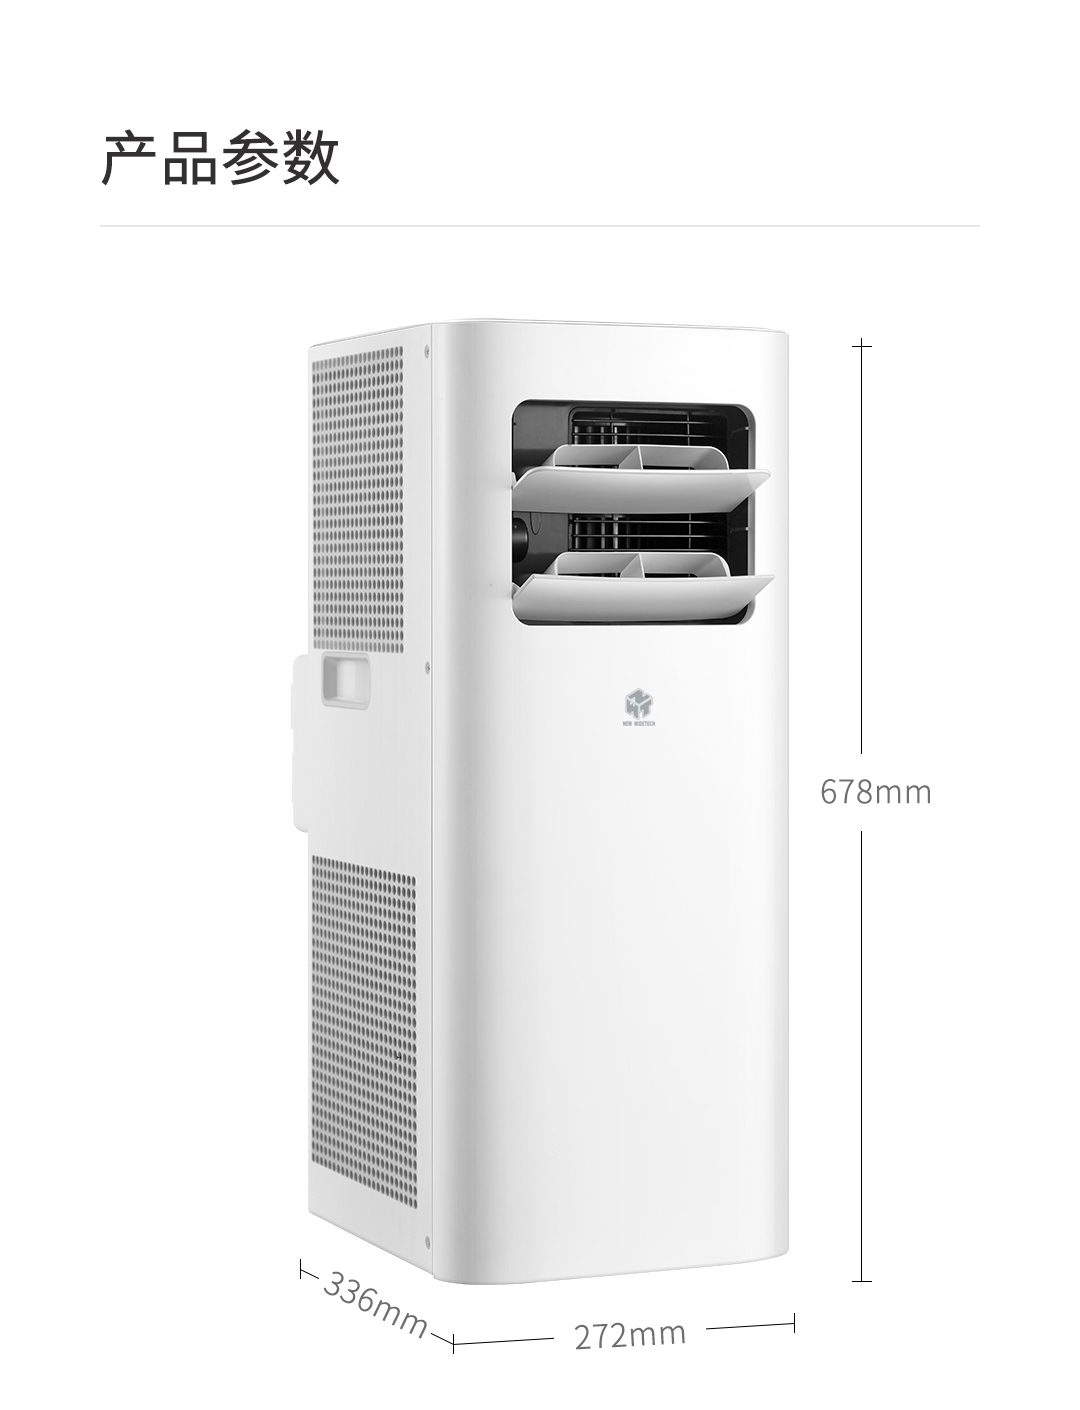 Кондиционер xiaomi купить в москве. Xiaomi New WIDETECH mobile Air Conditioner. Кондиционер Xiaomi Smartmi. Напольный кондиционер Сяоми. Напольный мини кондиционер Ксиаоми.